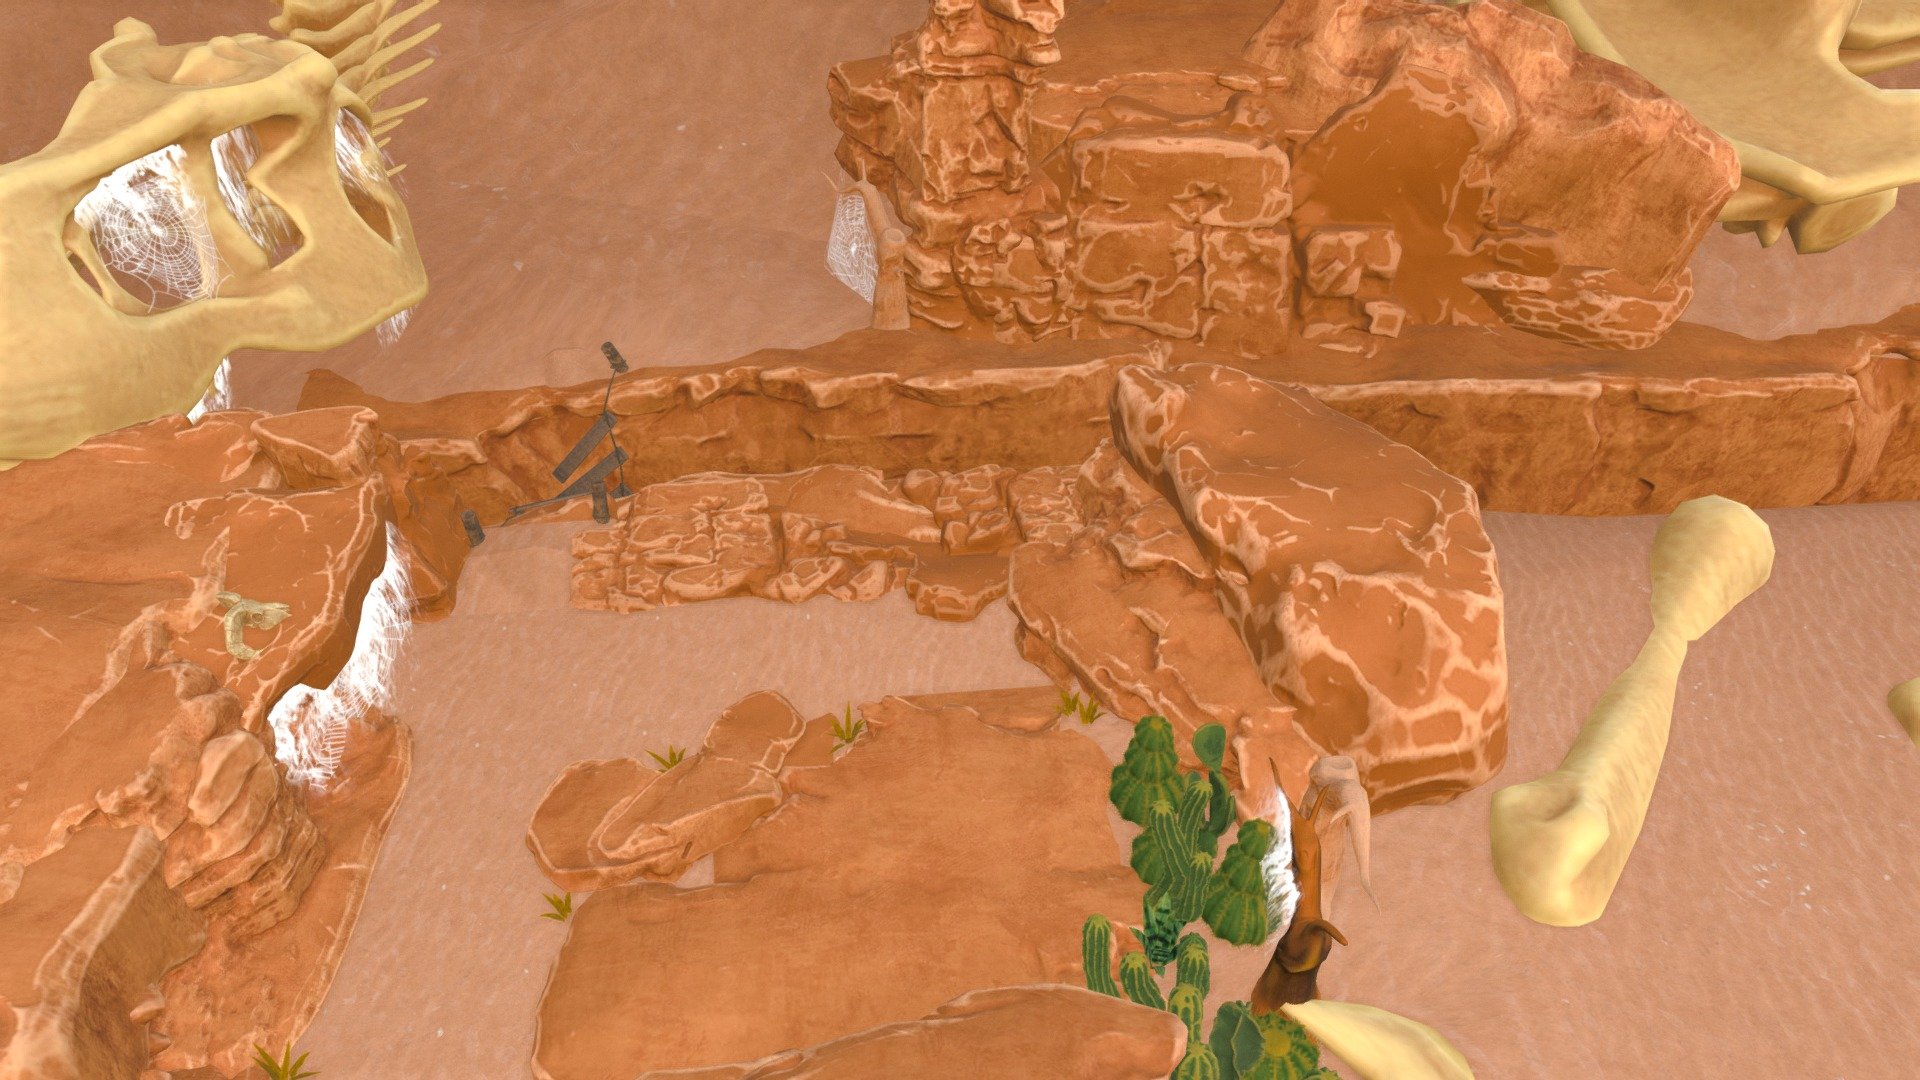 Asset Contain 
Combination of 2k and 4k textures 
12 unique Rocks
8 large Sand Dumes
8 Cactus Plant 1 Stylize Grass
2 version of sand texture
2 Version of Stylize Bones Model
 - Stylize Desert Asset - 3D model by Lundi CG Art (@DeonCoke) 3d model